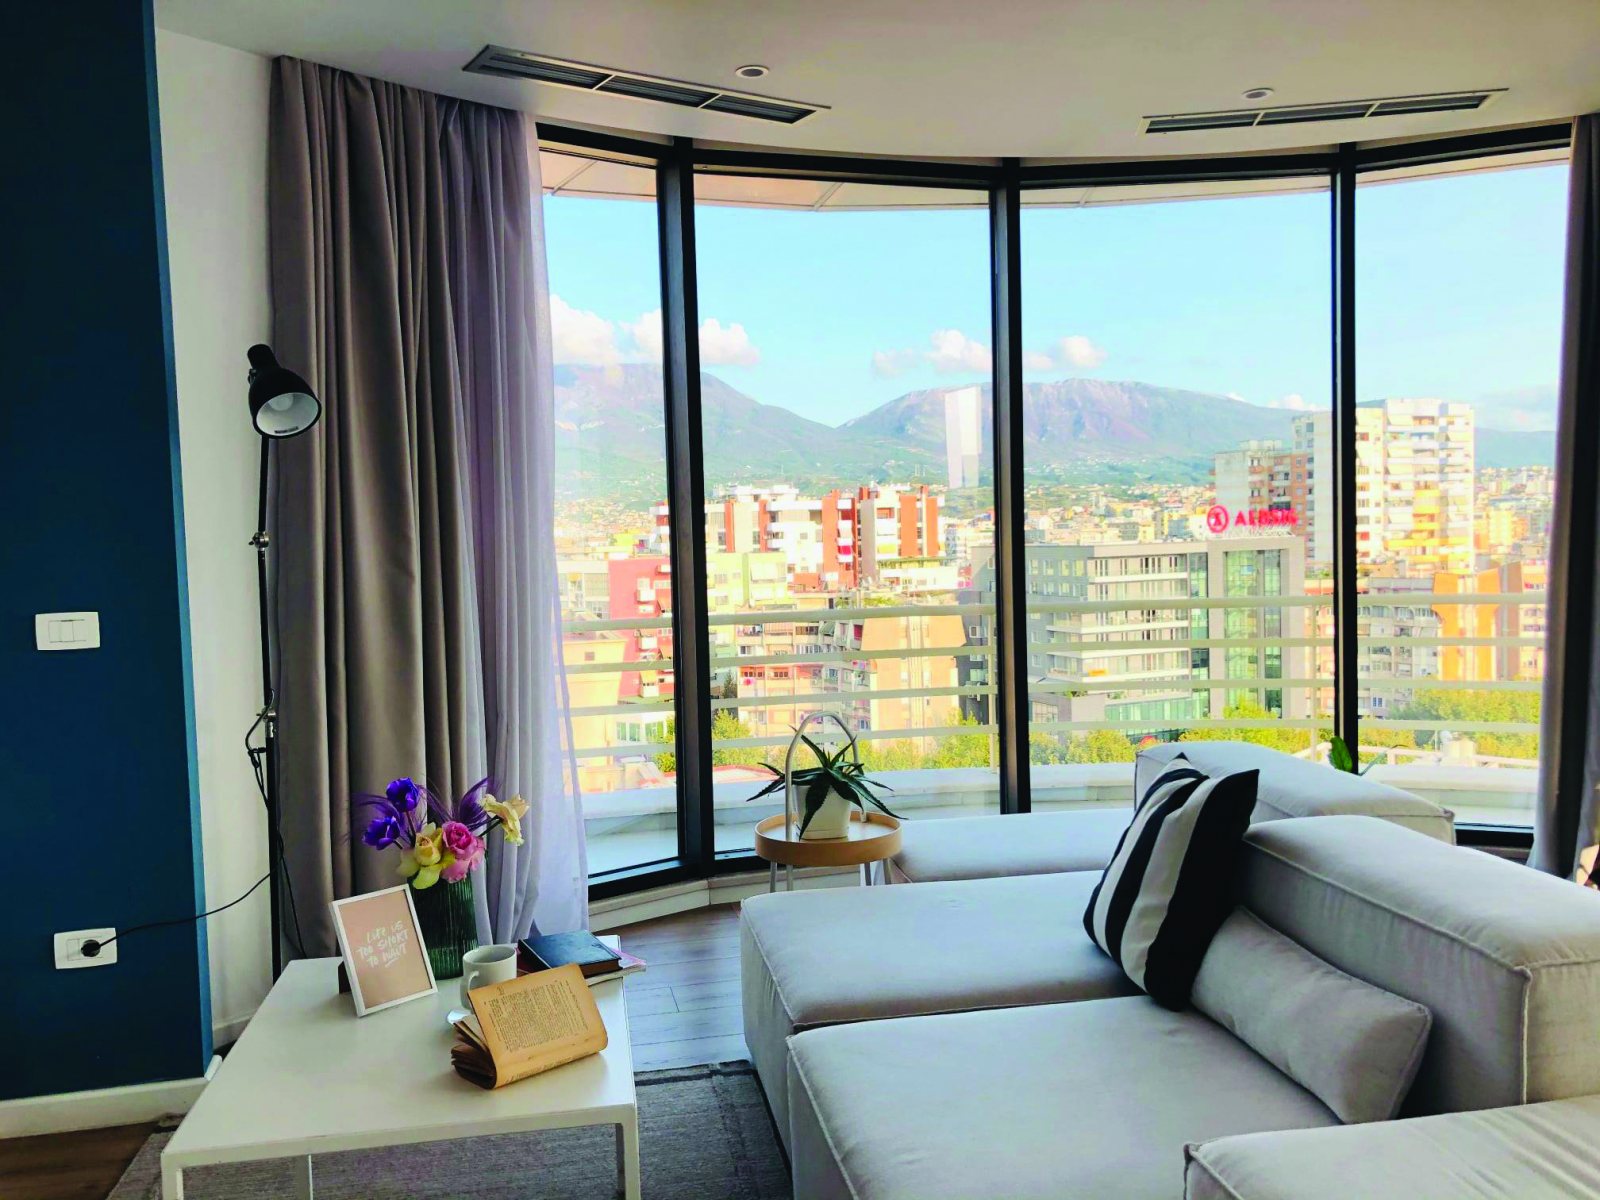 Shqipëria renditet e treta në Europë për çmimet më të shtrenjta të apartamenteve, në raport me të ardhurat